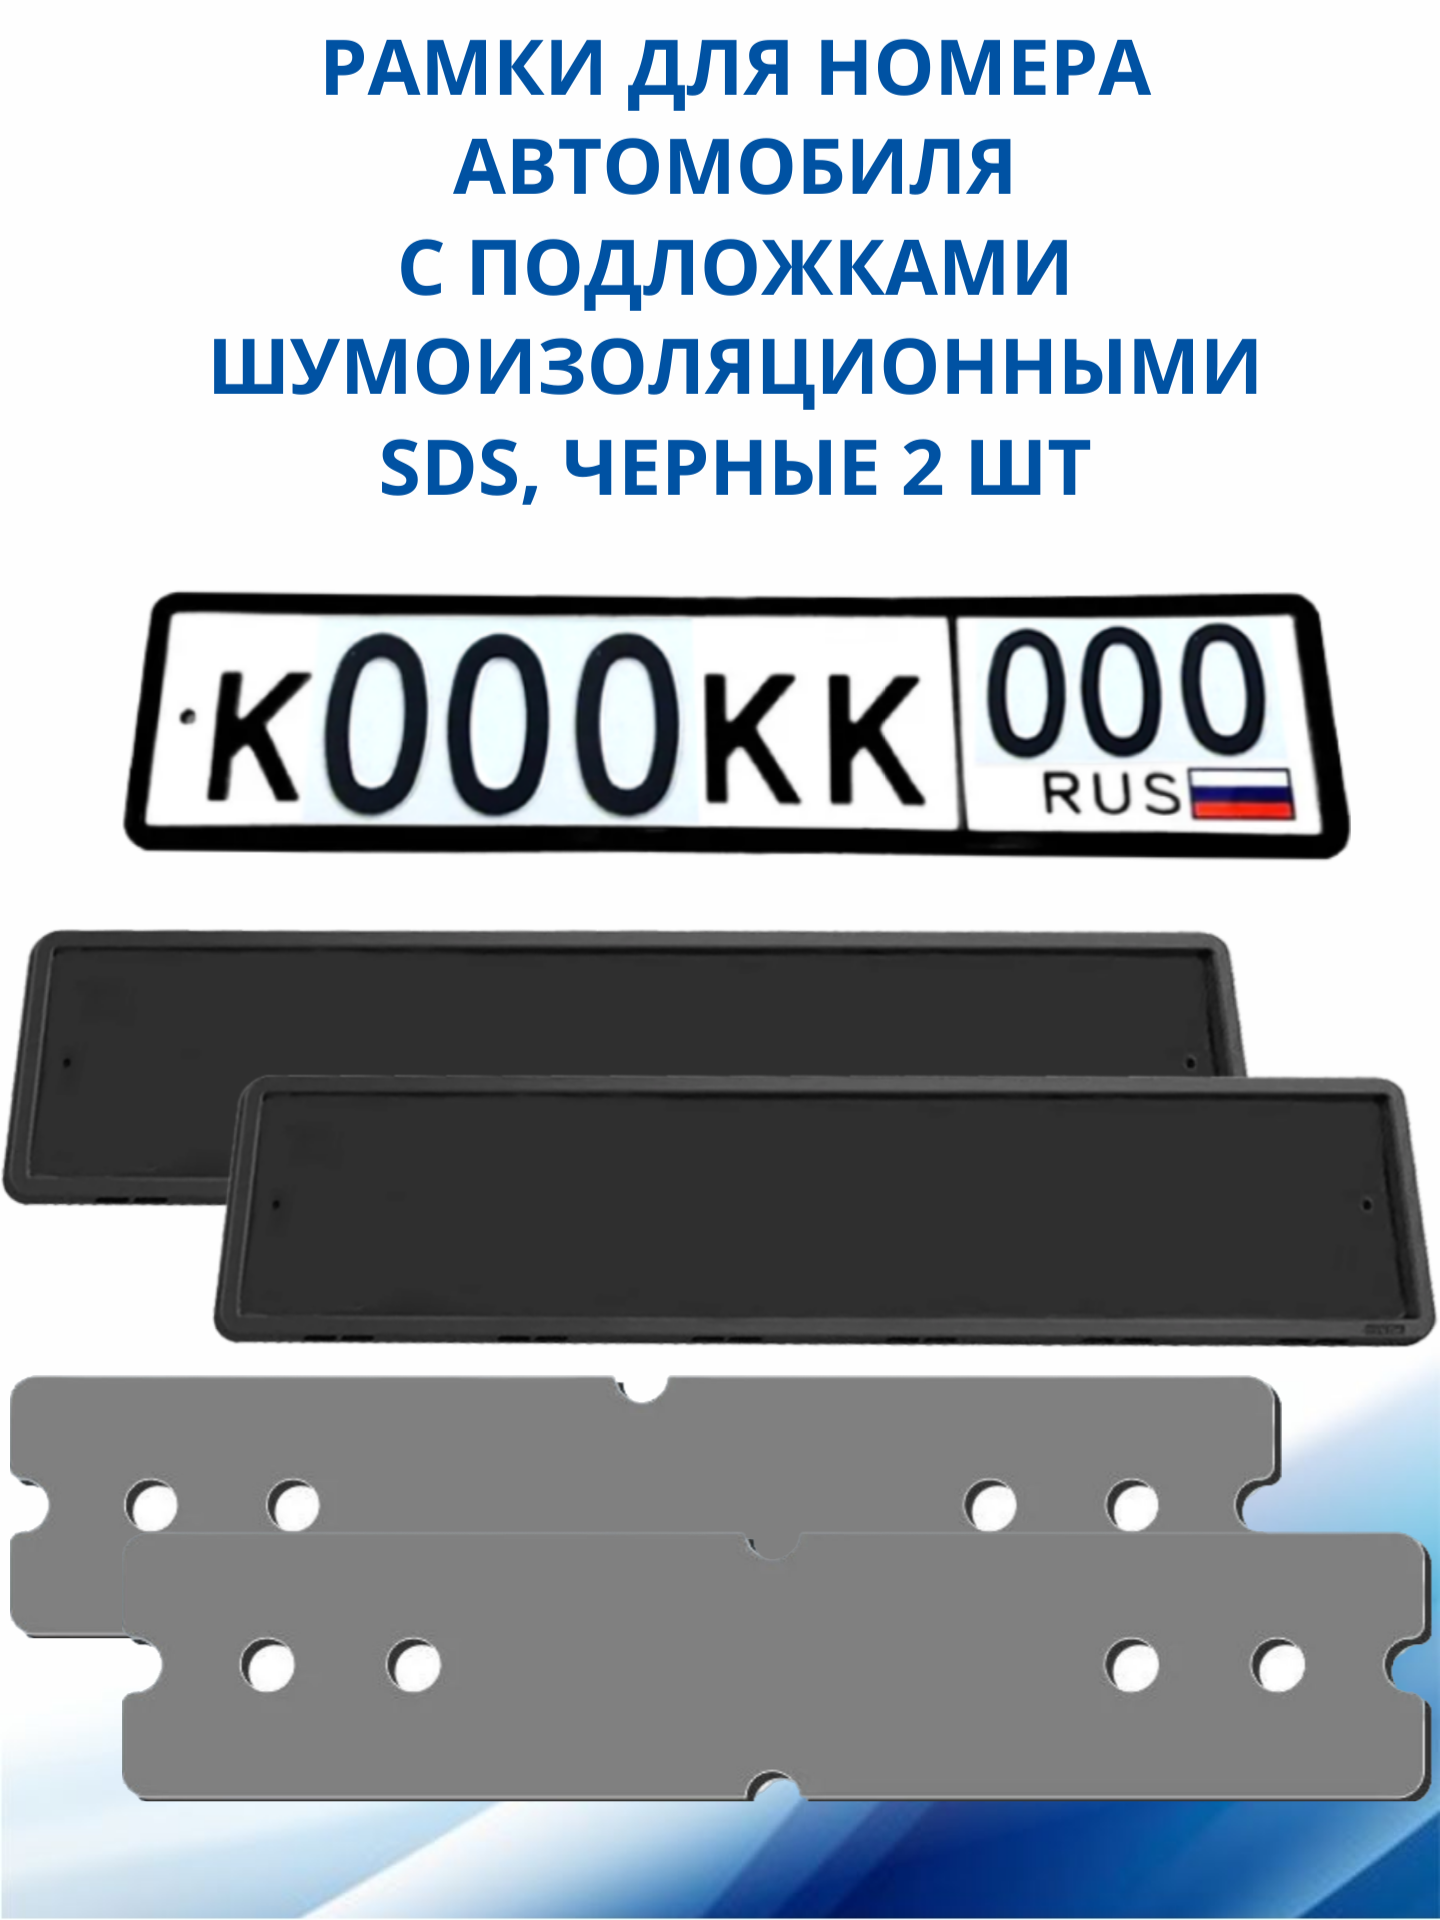 SDS / Рамка для номера автомобиля Черная силикон с подложкой шумоизоляционной 2 шт